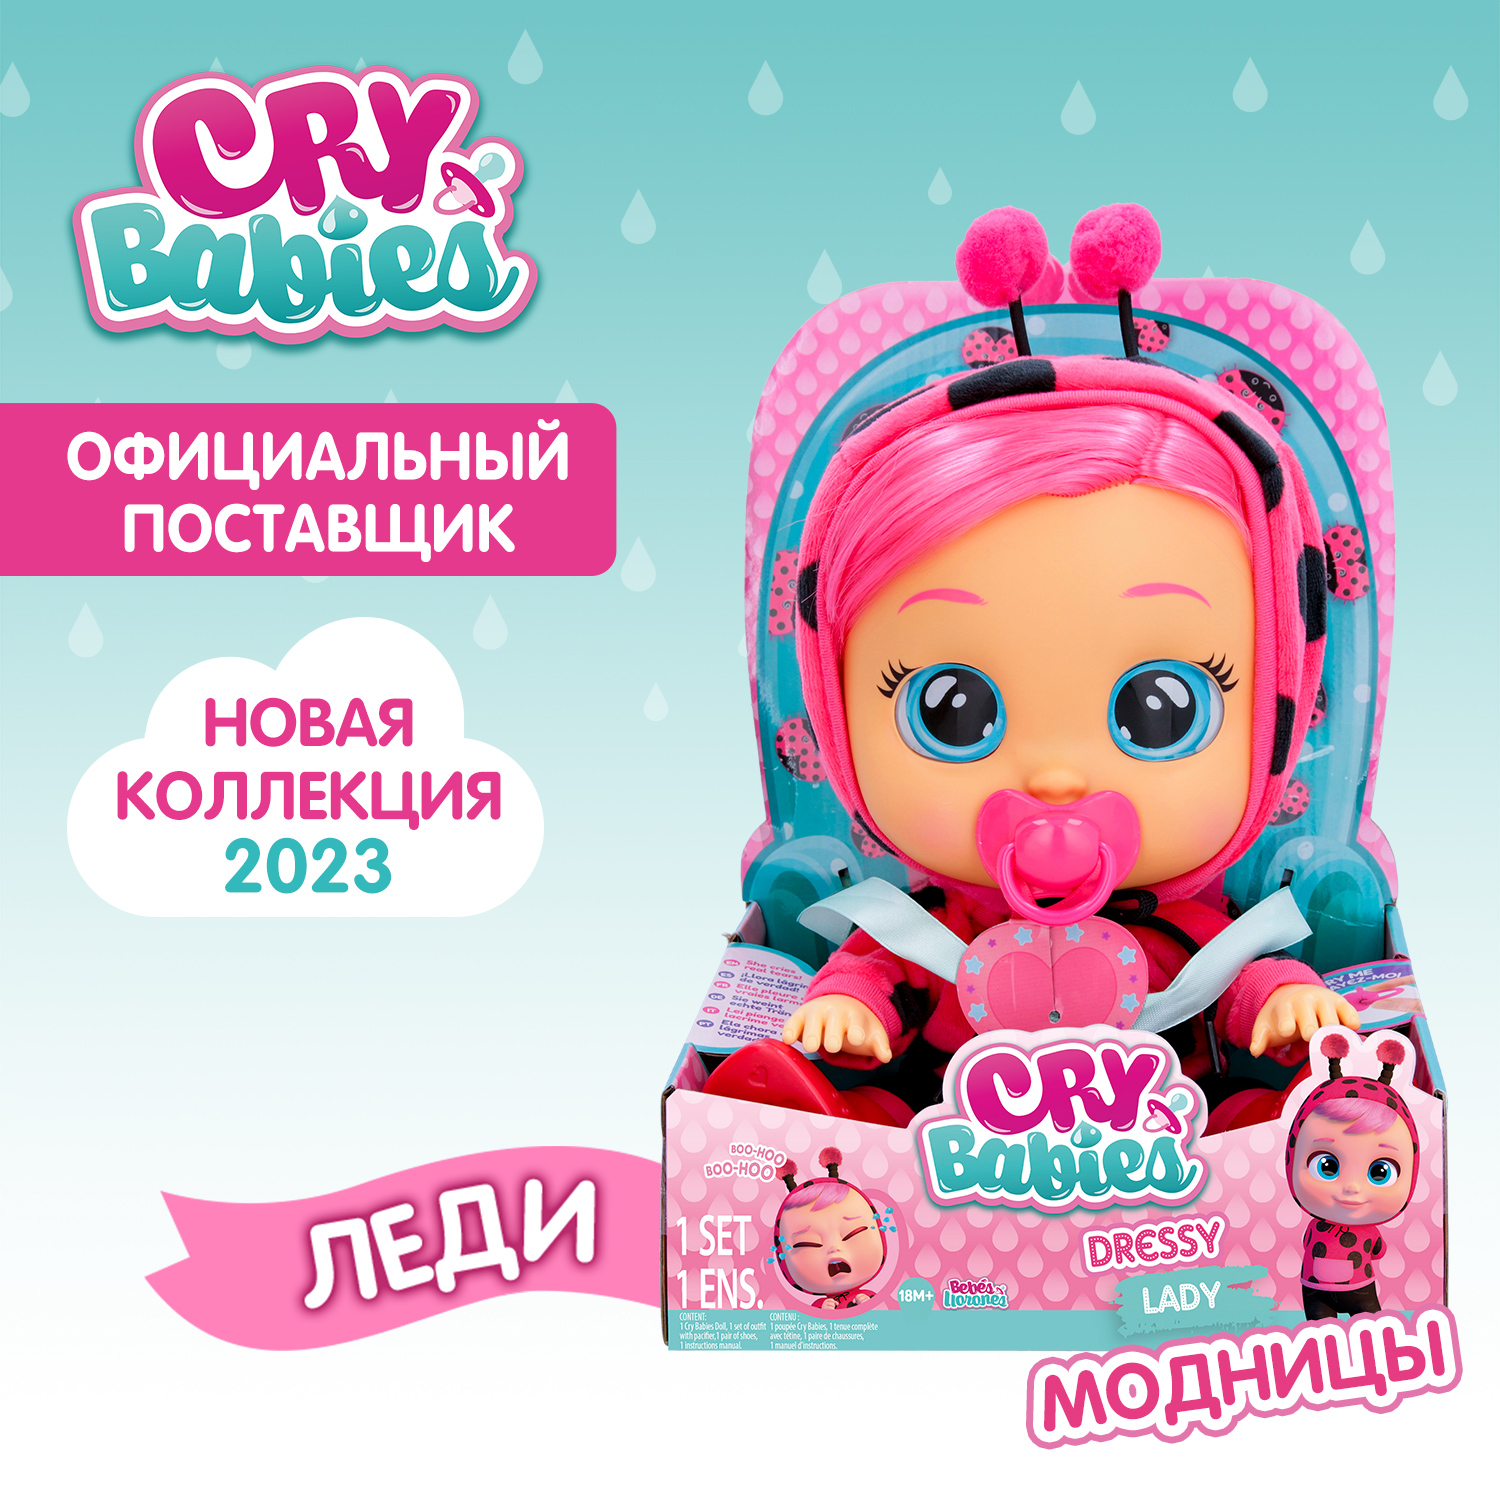 Кукла Cry Babies Леди Модница, интерактивная, плачущая, 40885 кукла cry babies край бебис дотти малышка интерактивная плачущая 41036